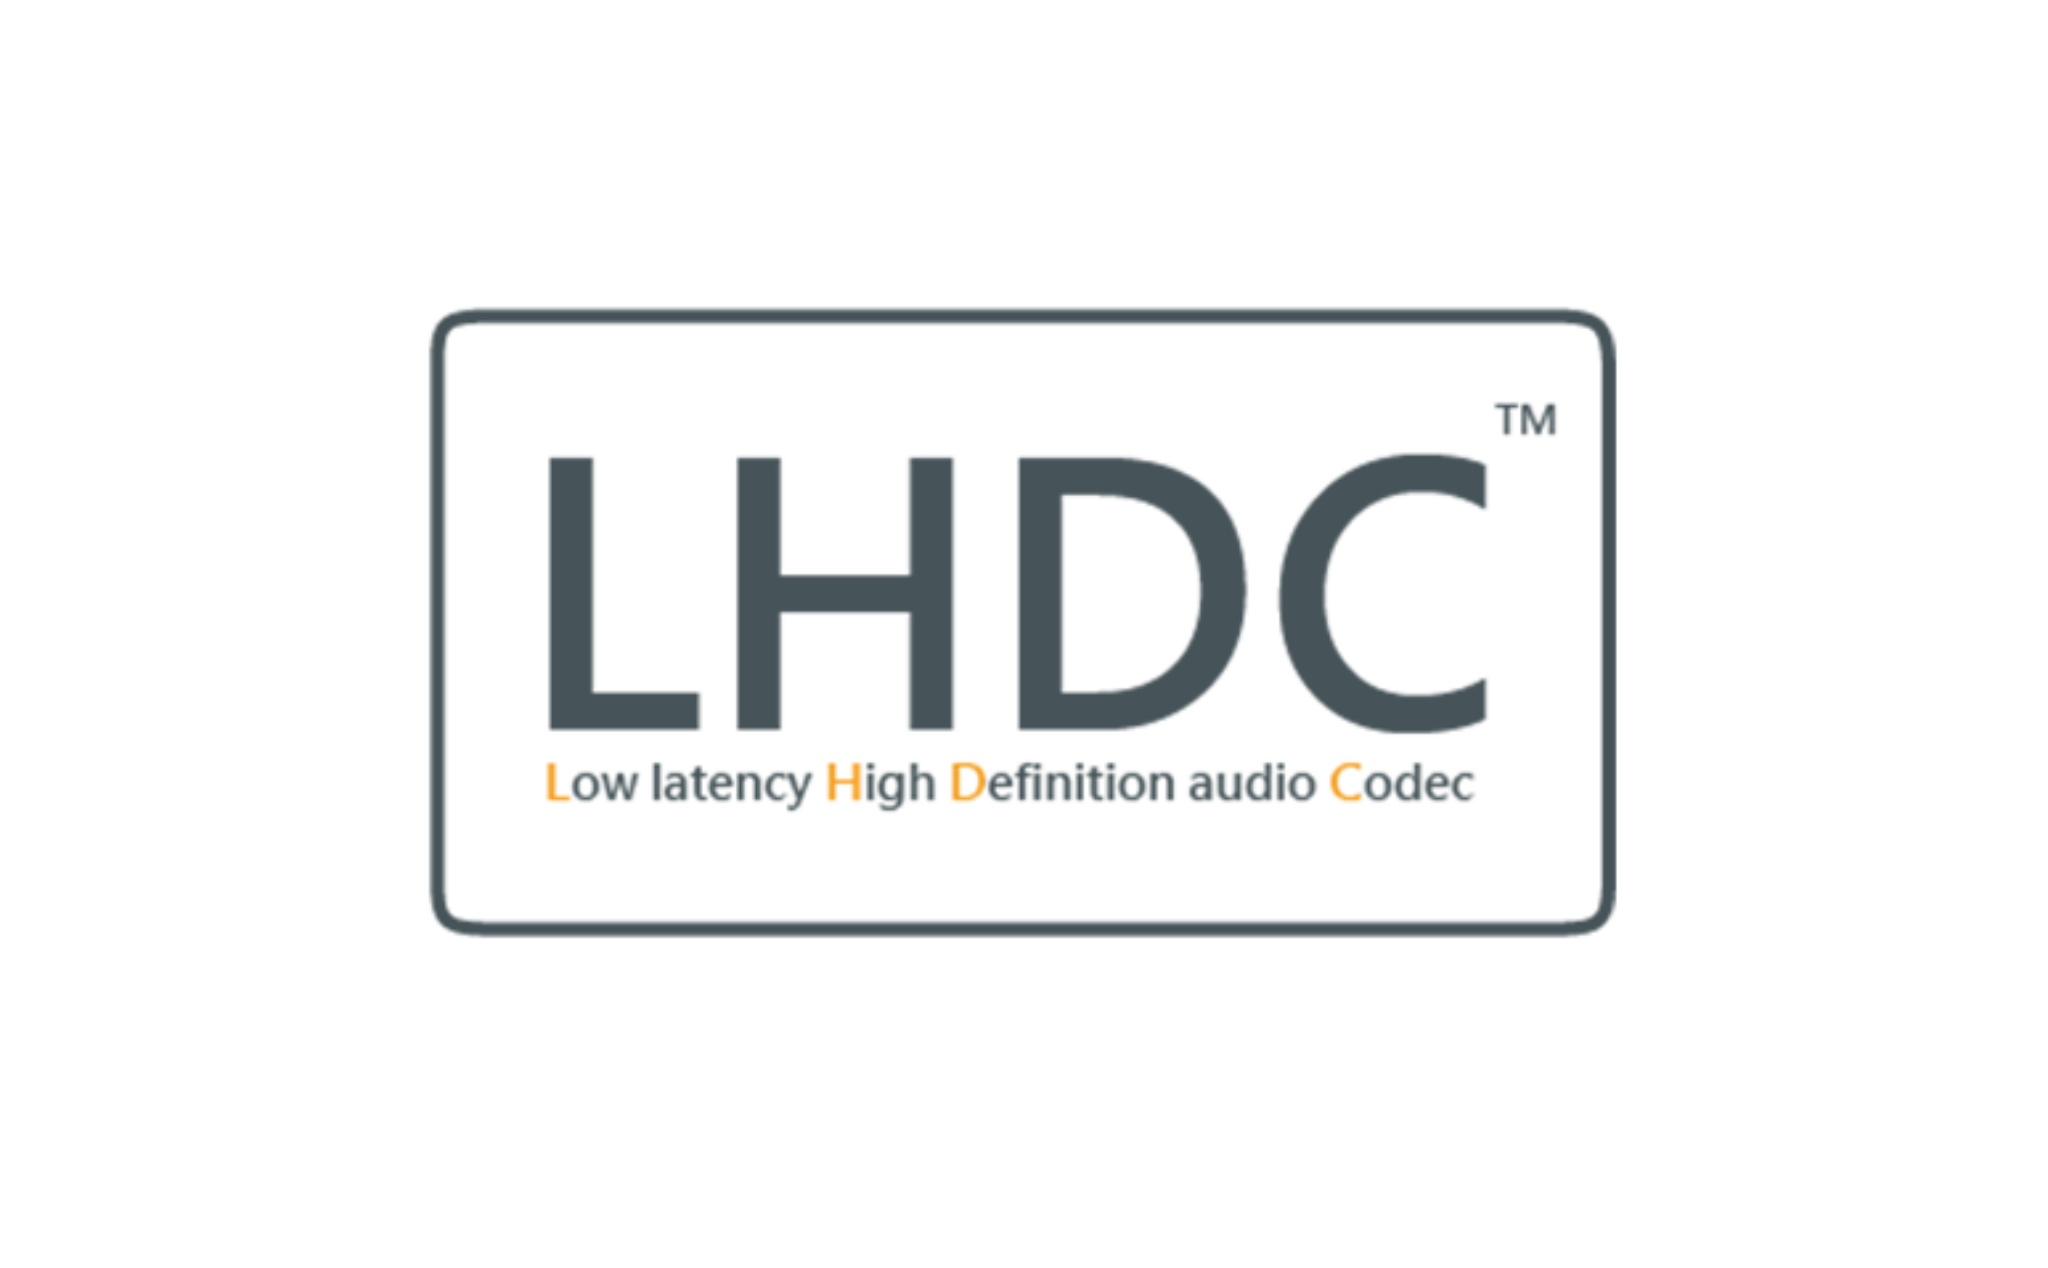 Android 10 sẽ hỗ trợ chuẩn codec Bluetooth Hi-Res mới LHDC, cùng nhiều công nghệ cho Hi-Res Audio